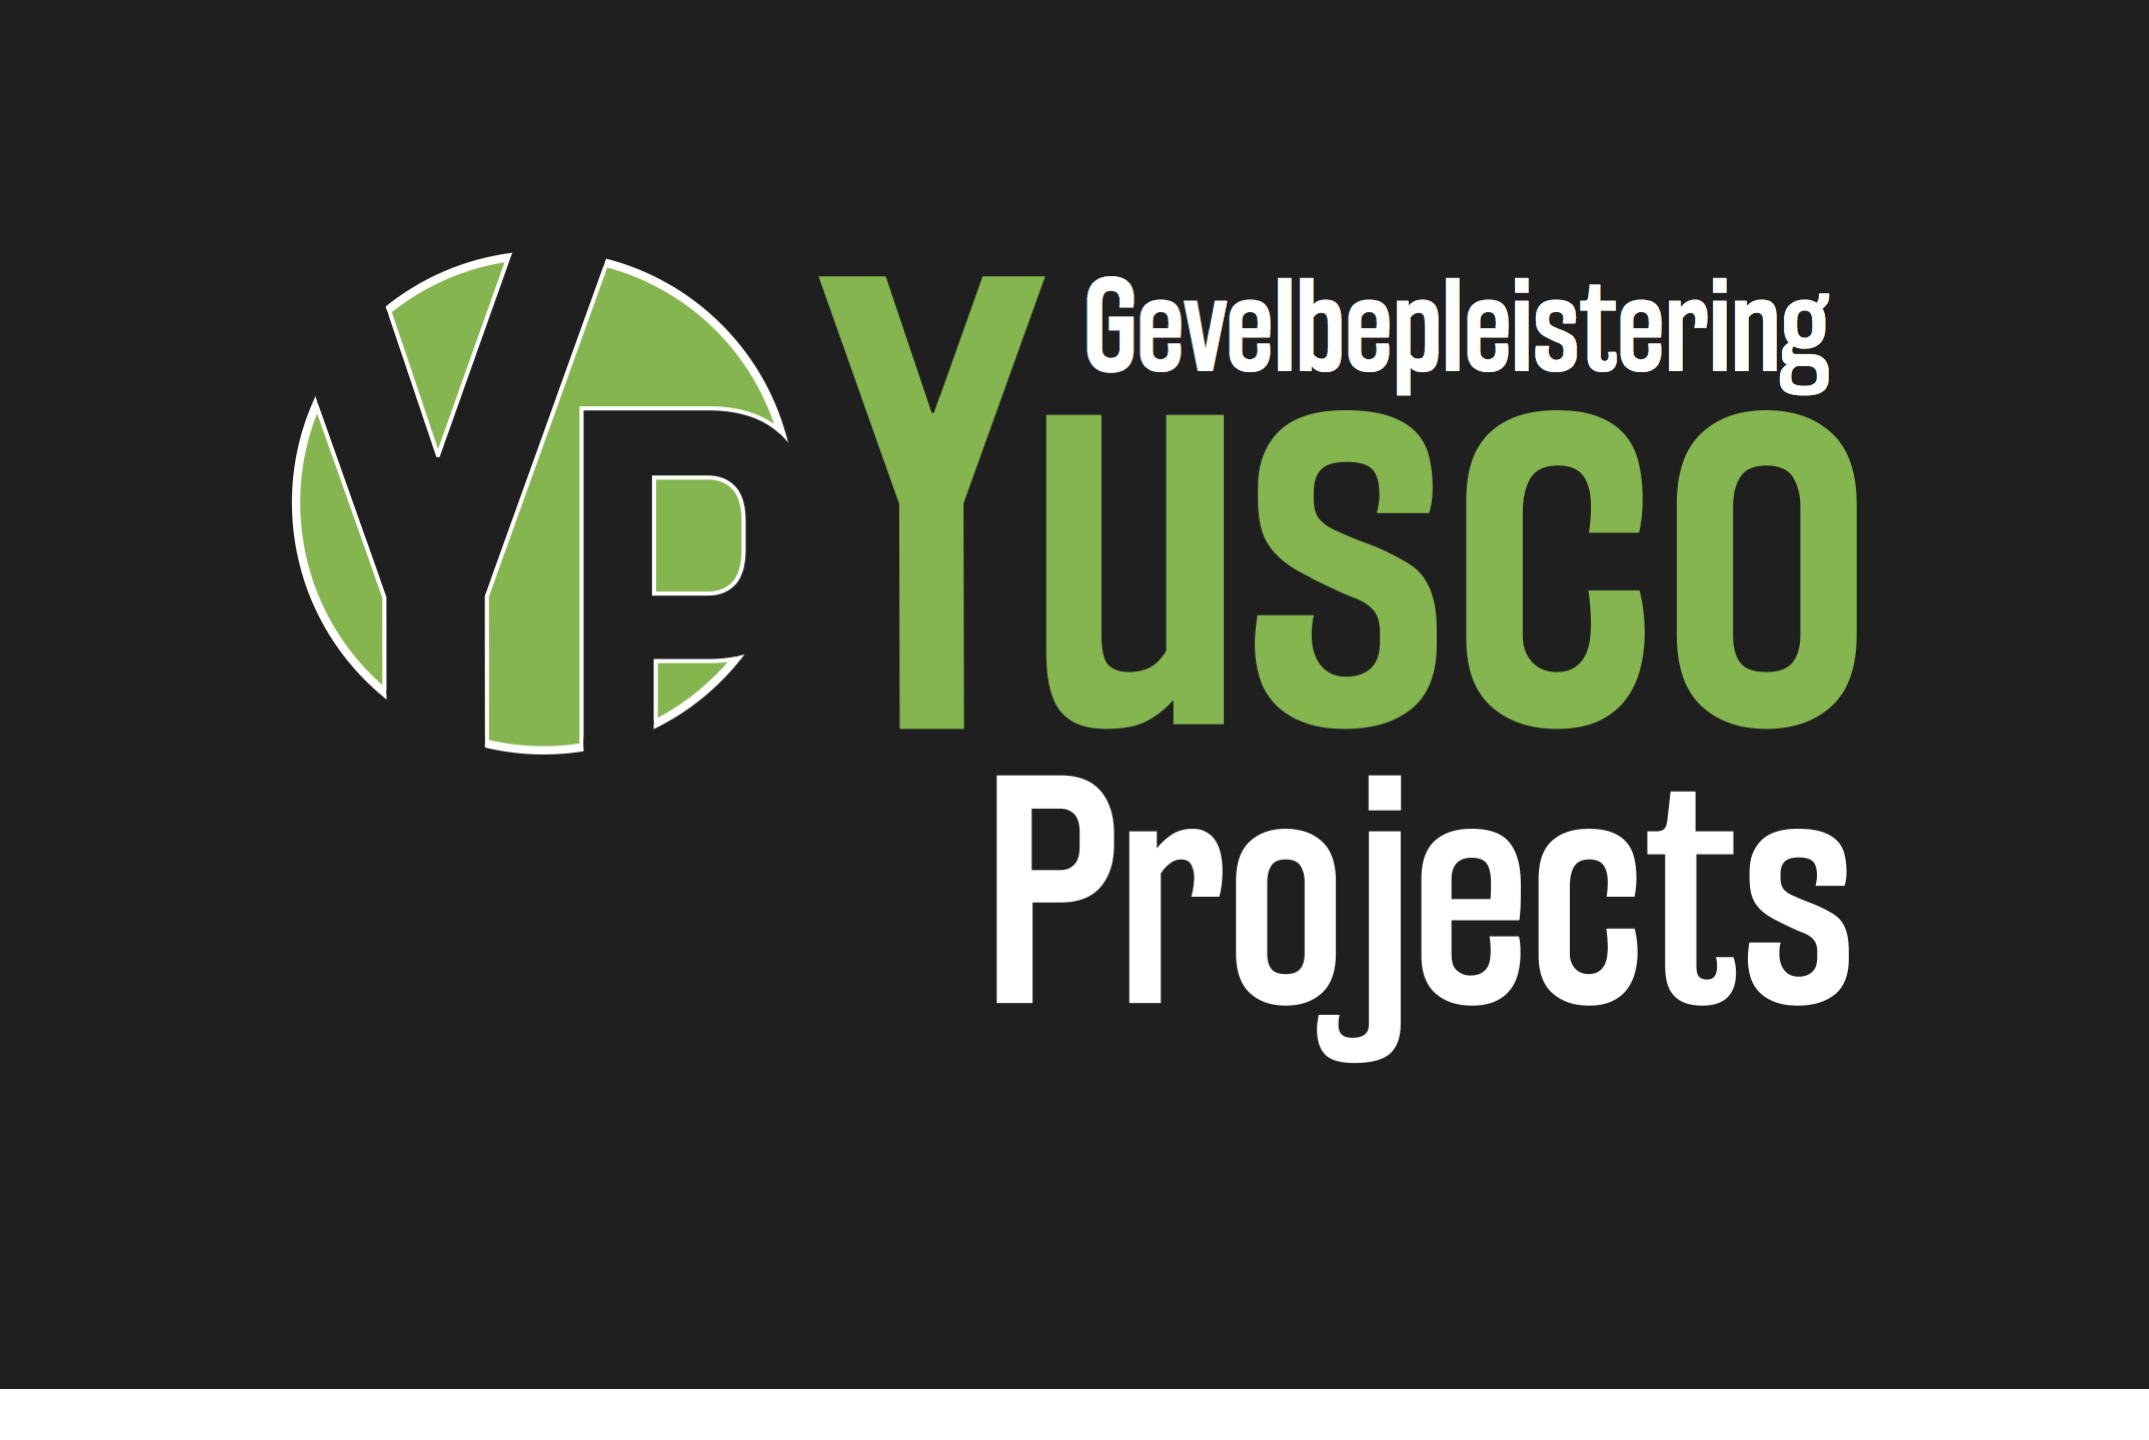 renovatieaannemers Merelbeke Yusco Projects Gevelbepleistering